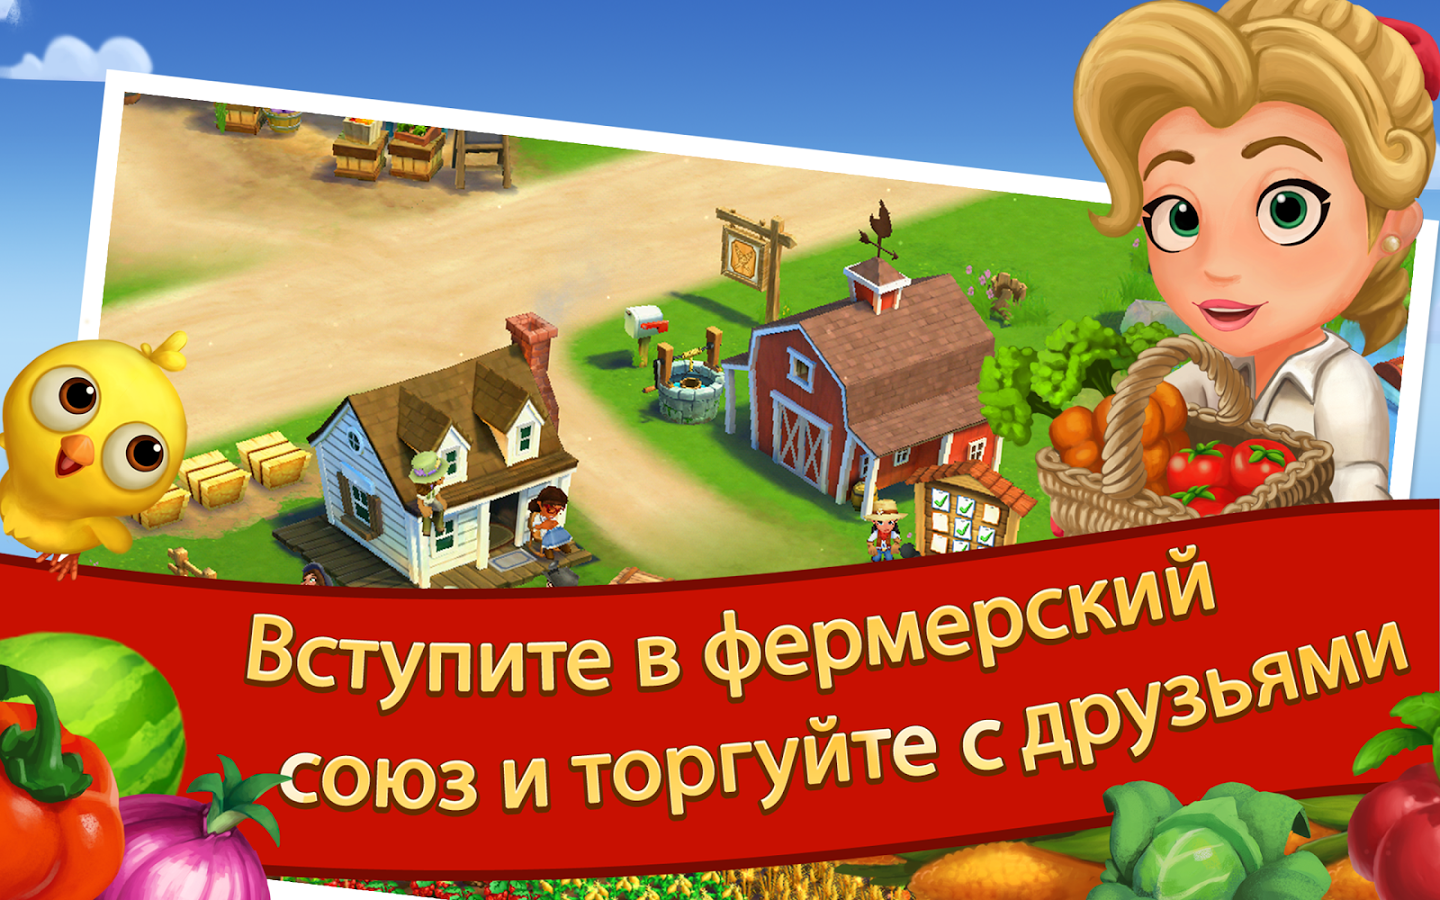 farmville 2 country escape free download